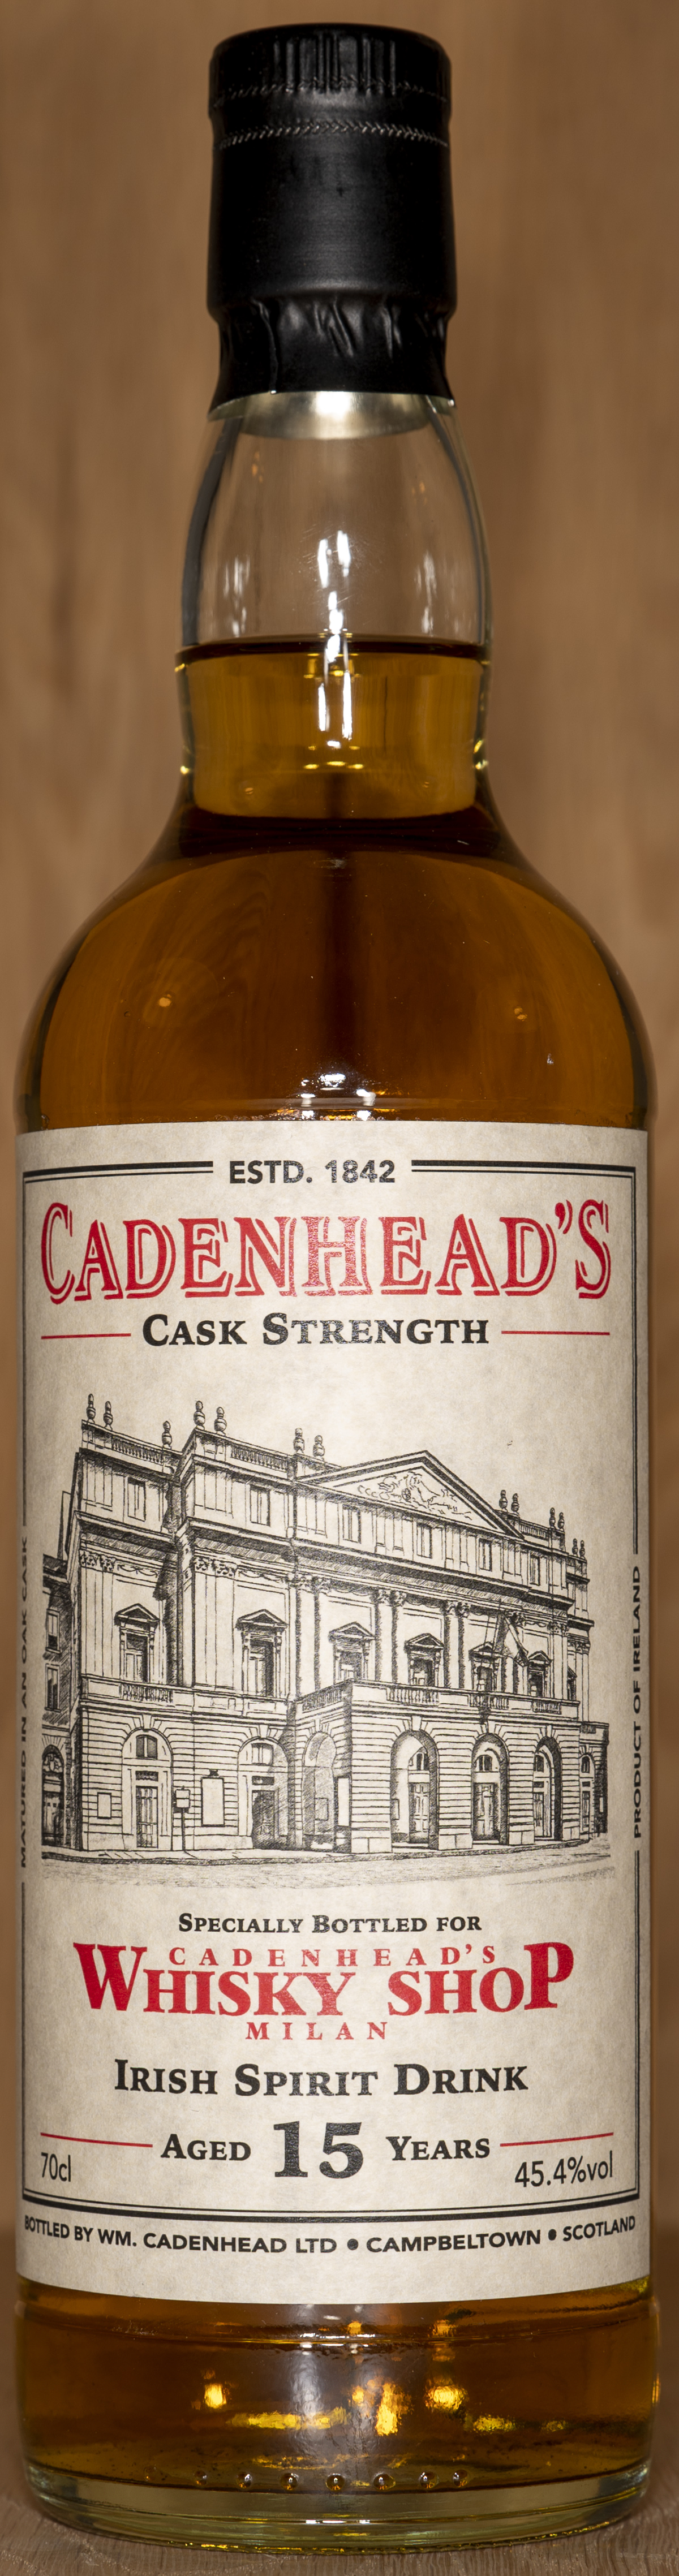 Billede: DSC_5000 - Cadenheads Whisky Shop Milan - Irish Spirit Drink 15 years - bottle front.jpg